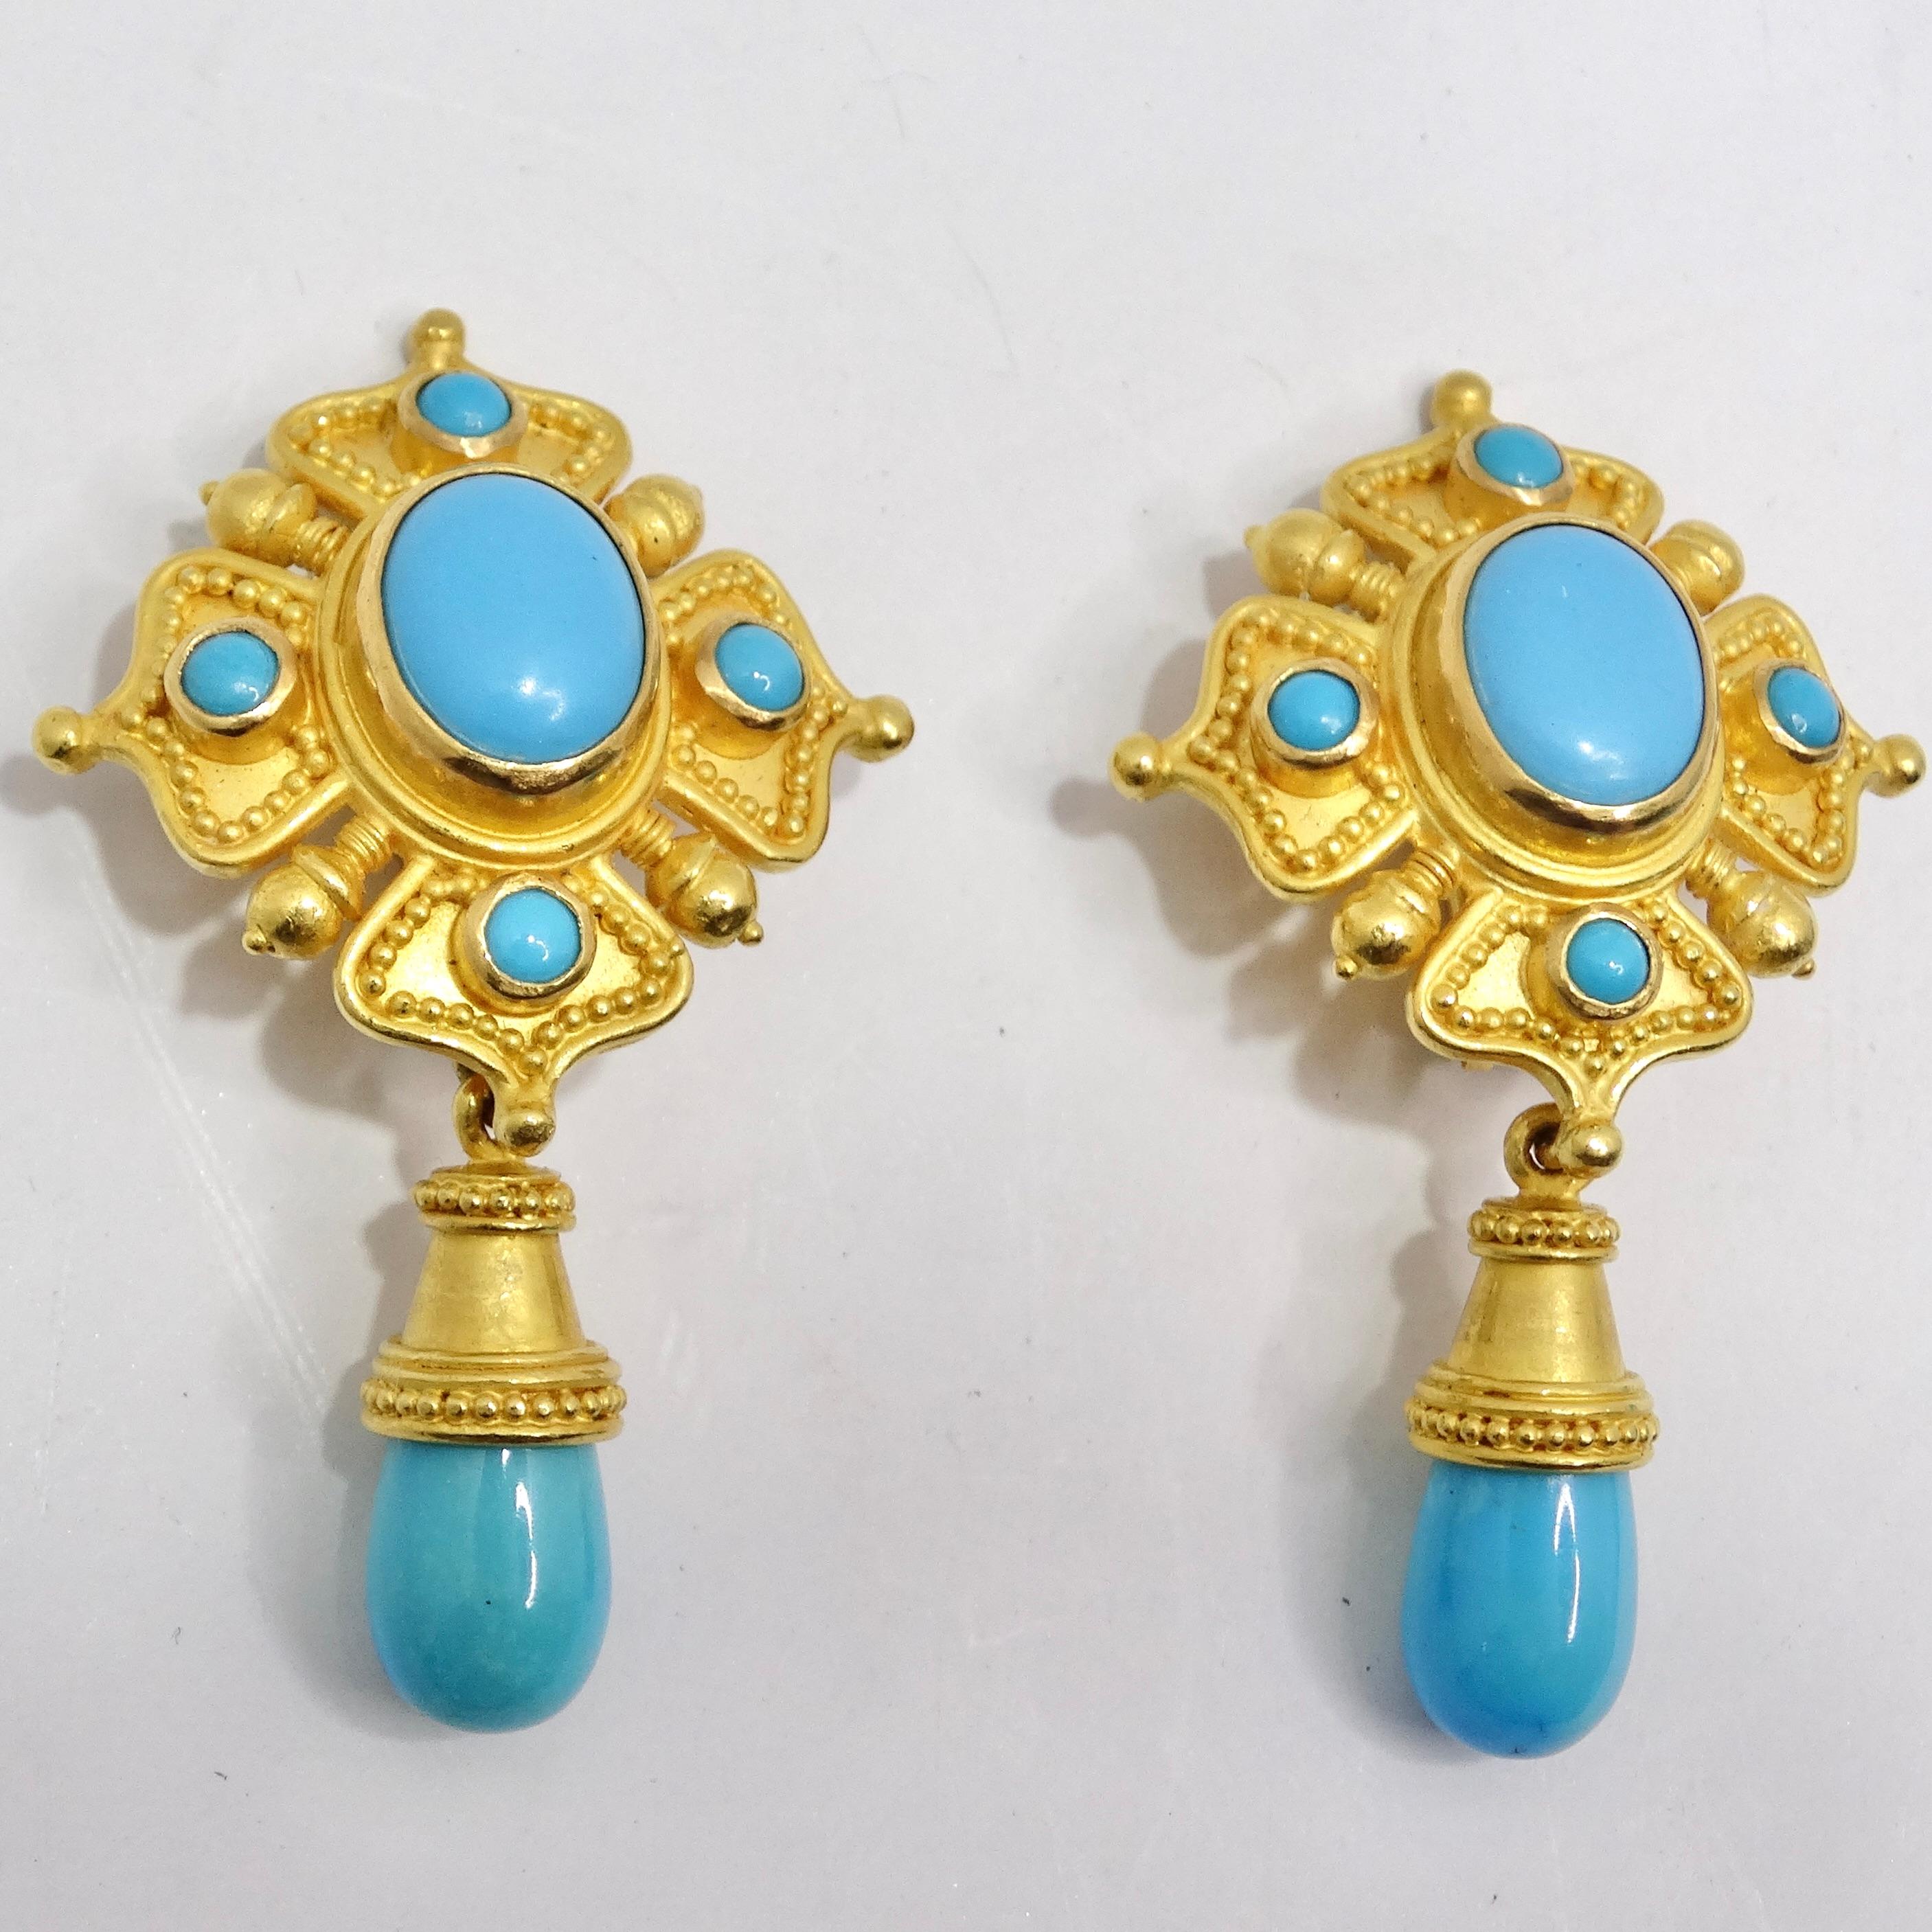 Die Carolyn Tyler 22K Gold Sleeping Beauty Turquoise Dangle Earrings sind ein atemberaubendes Paar Ohrringe, das mühelos Luxus und natürliche Schönheit verbindet. Diese Ohrhänger sind ein Meisterwerk an Design und Handwerkskunst. Das luxuriöse und